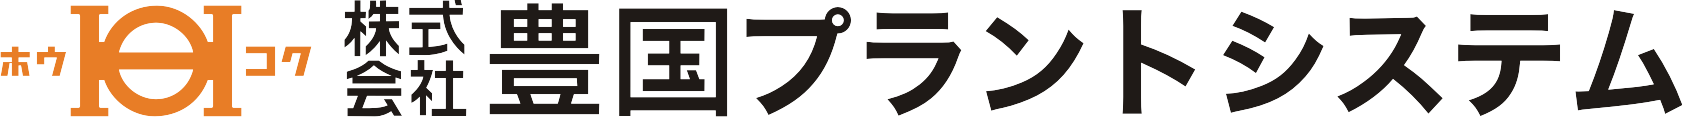 社名logoプラントシステム